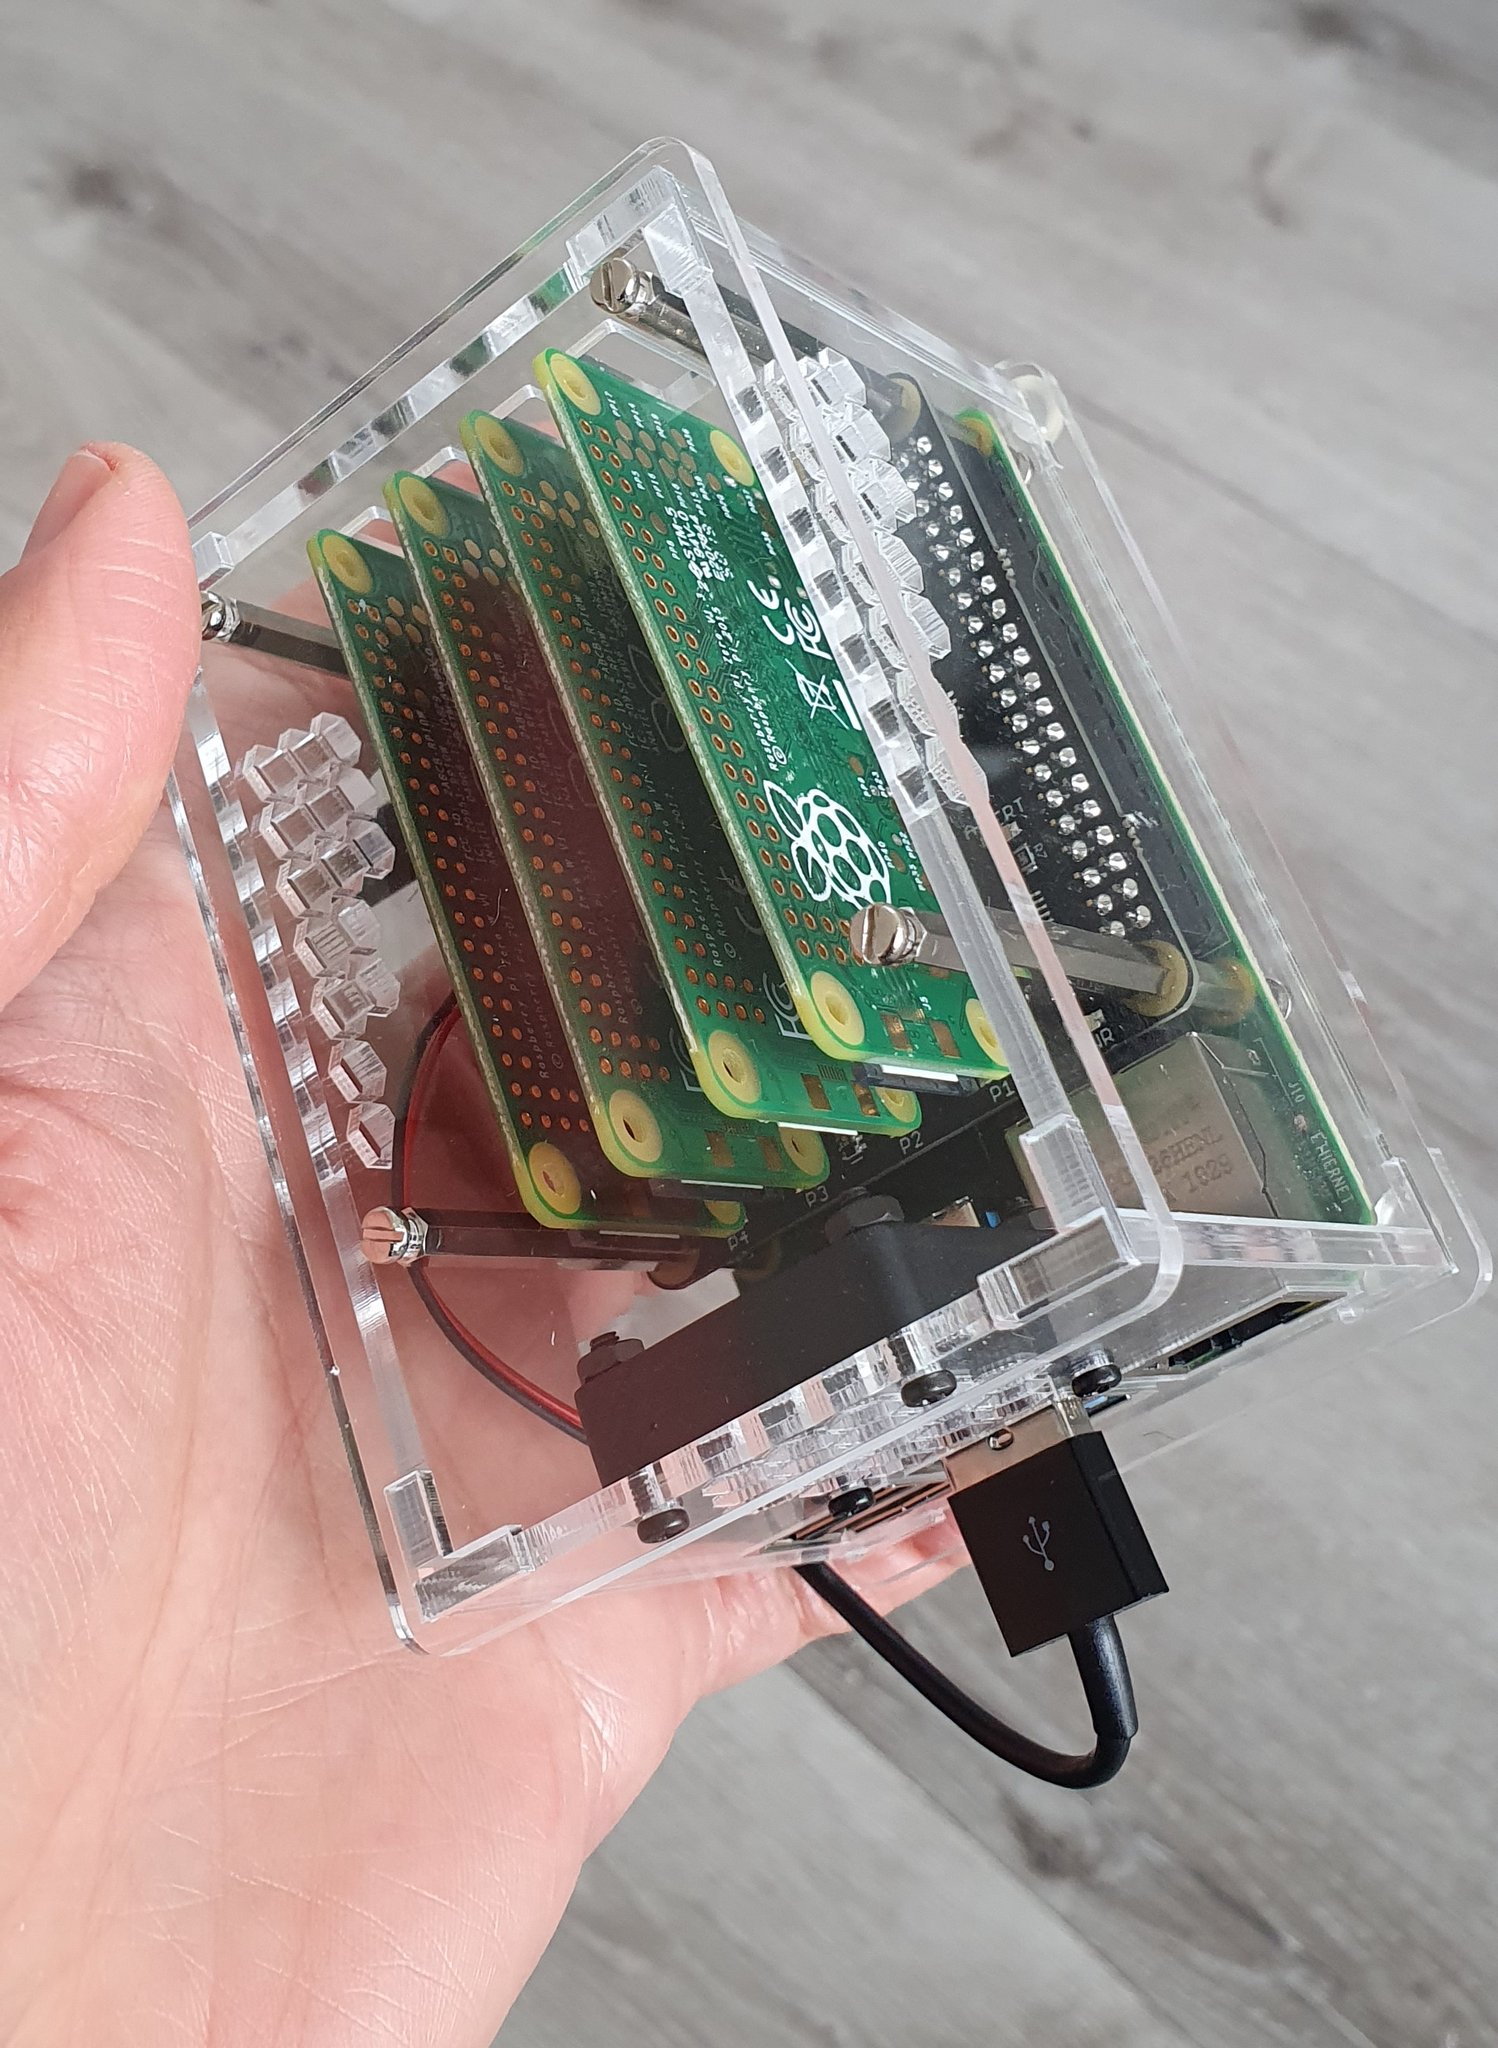 Raspberry Pi Zero 2 W Cluster Stacks Four Boards